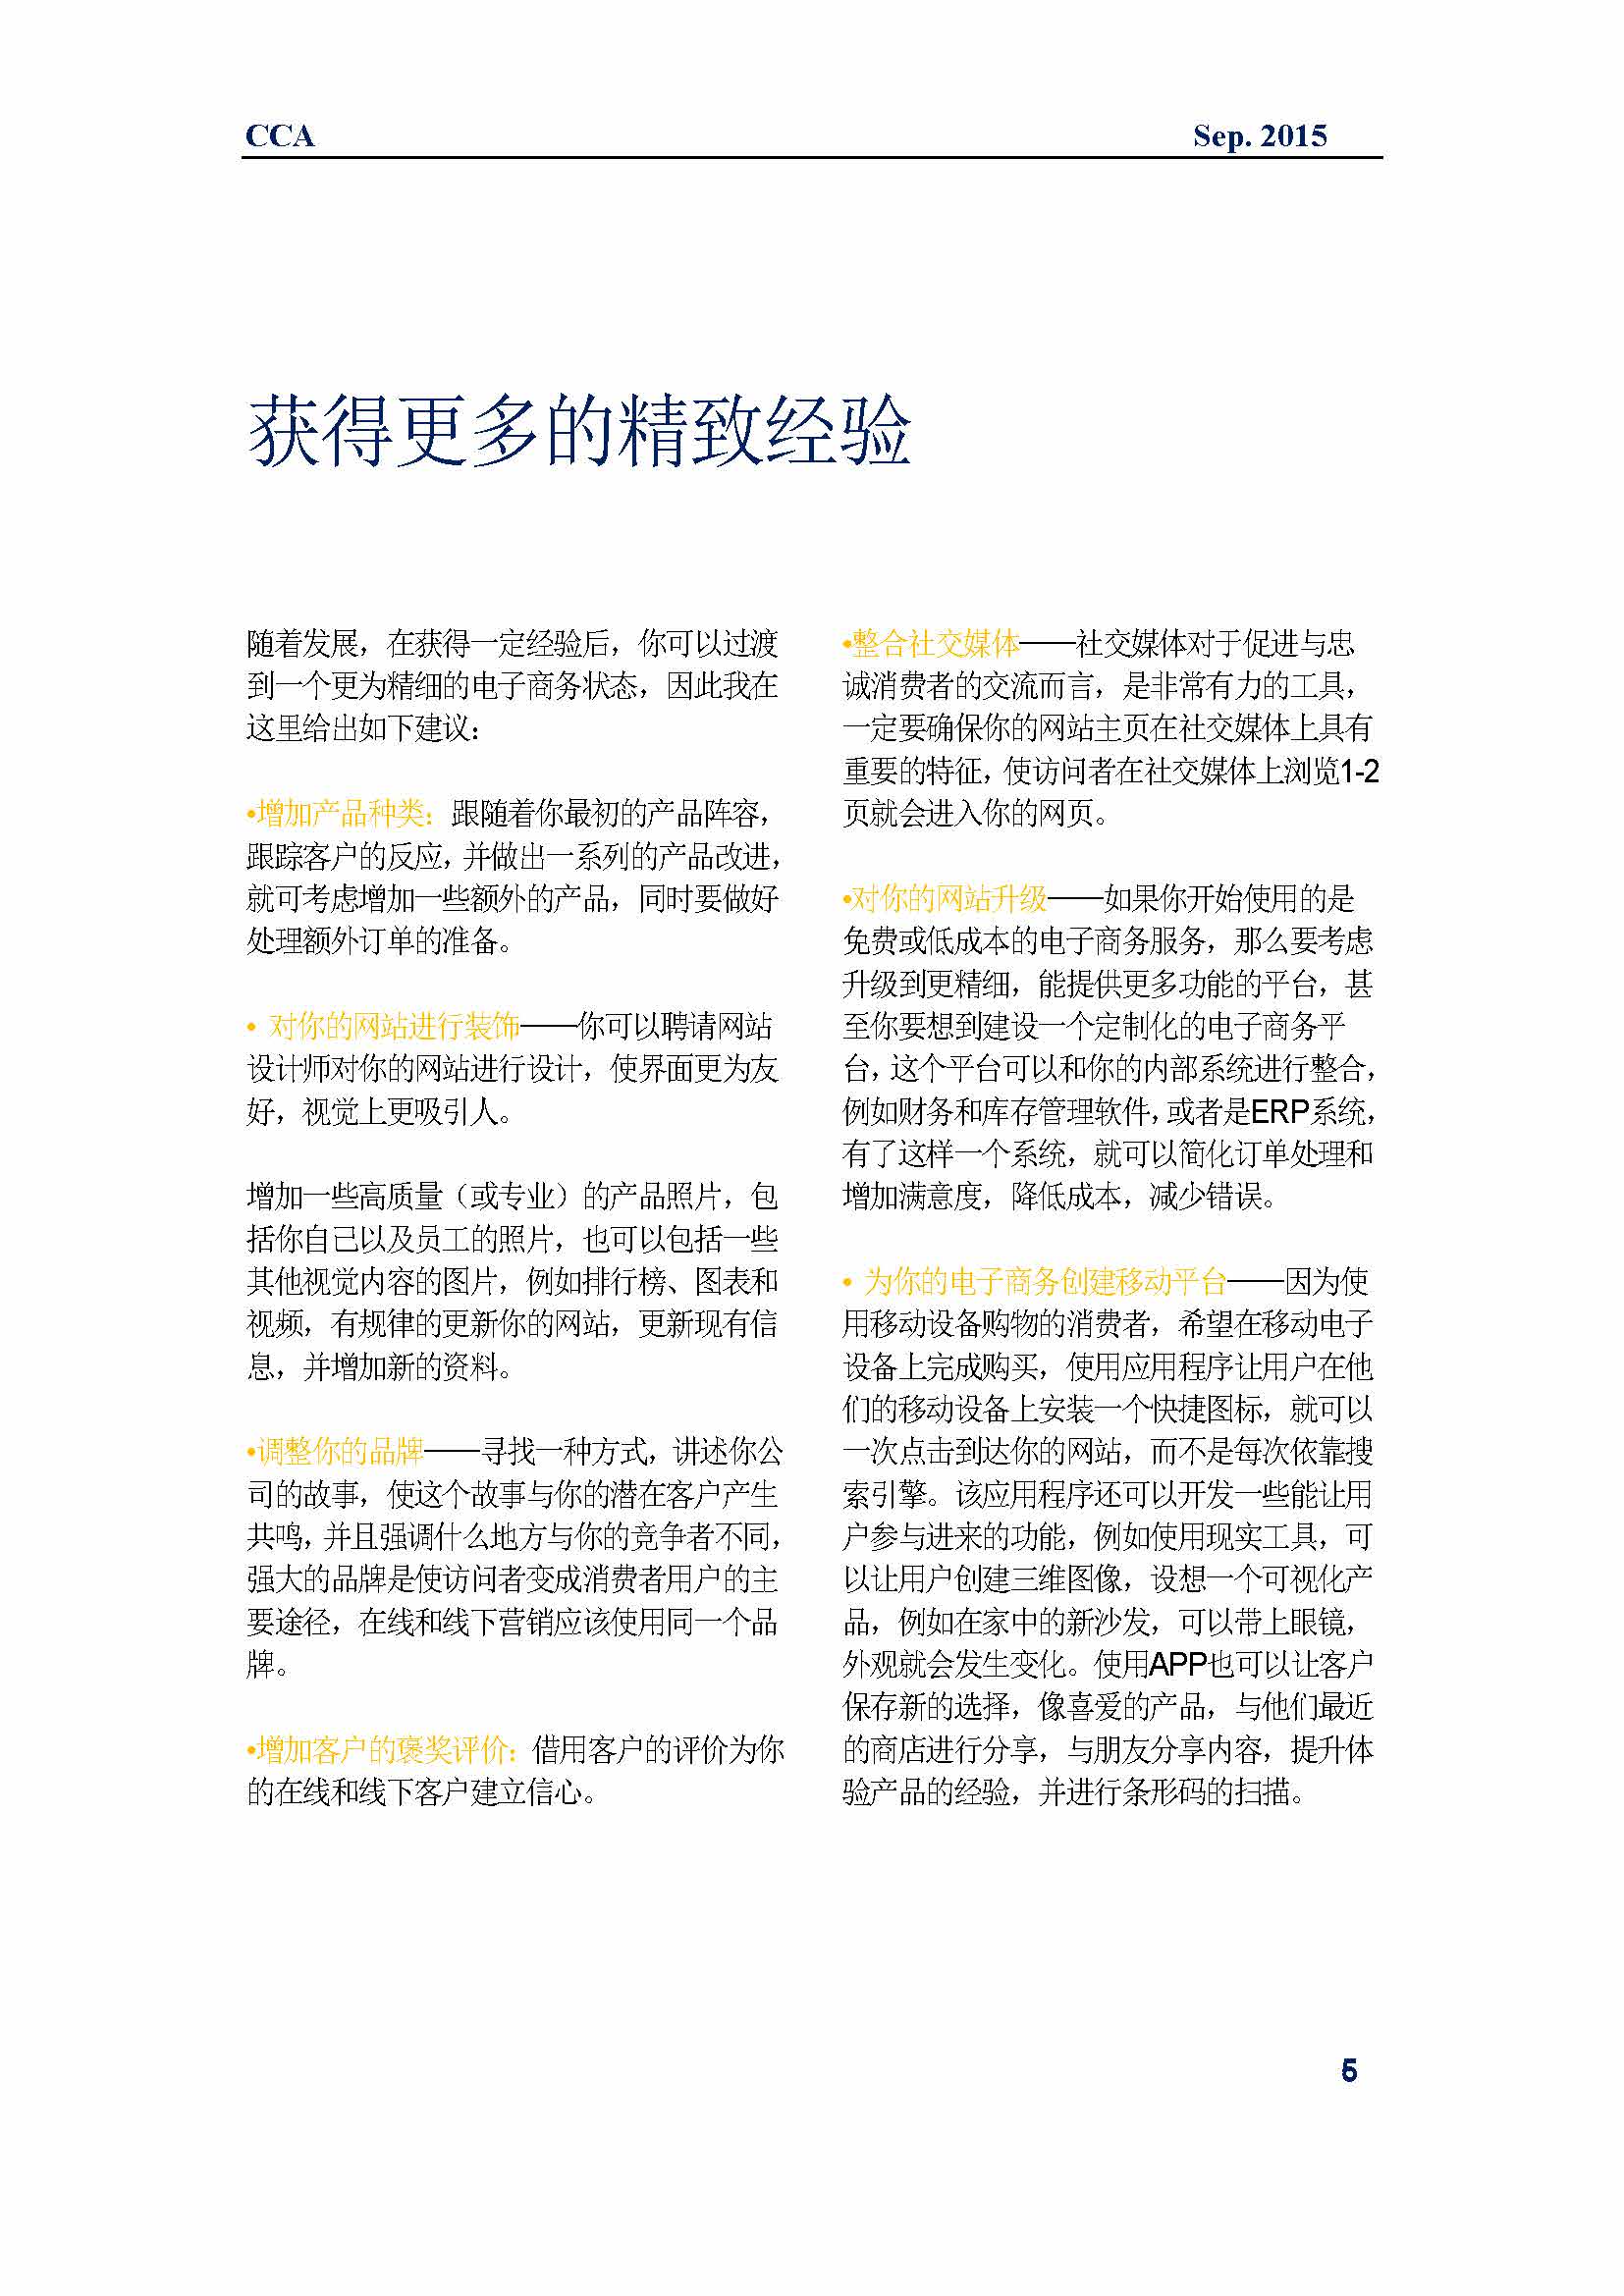 中国科技咨询协会国际快讯（第二十五期)_页面_08.jpg